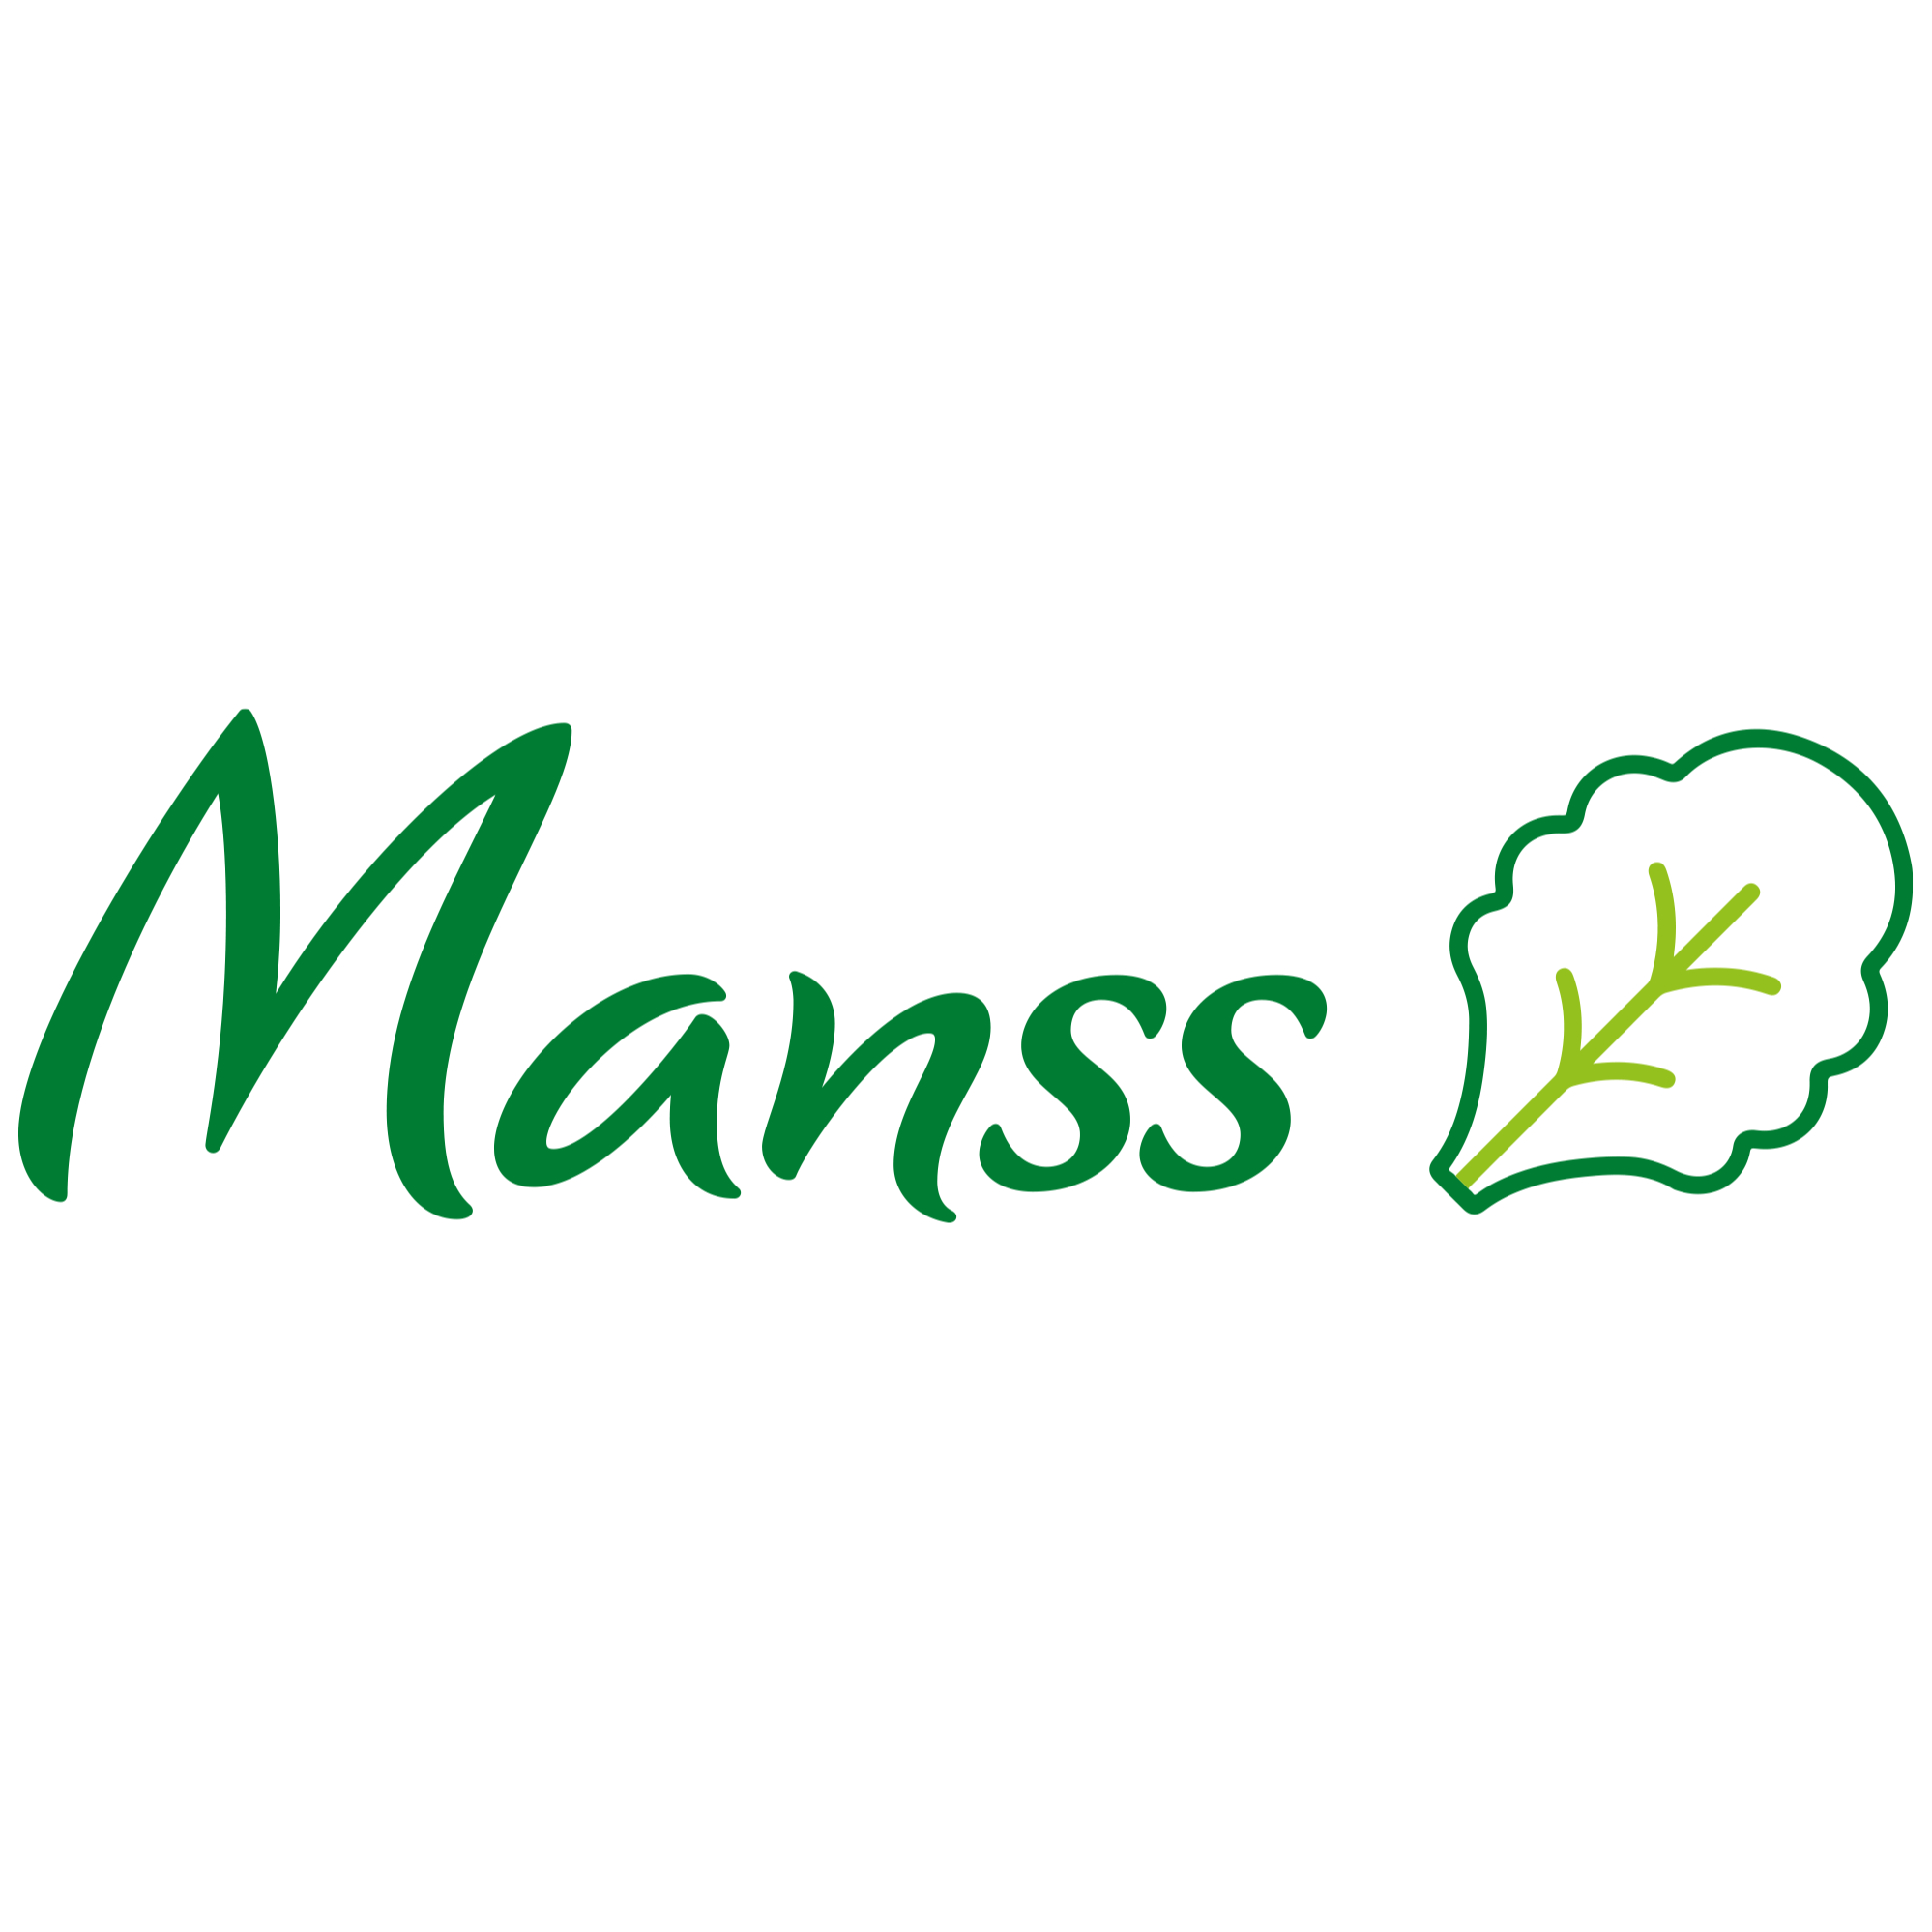 Logo Manss Foodservice ist ihr starker Partner im Großhandel für Obst, Gemüse, Kräuter, Salate, Bioprodukte, Kartoffelprodukte, exotische Früchte, Feinkost, Convenience, Molkereiprodukte, Gastro-Spezial und Diverse in Hamm.